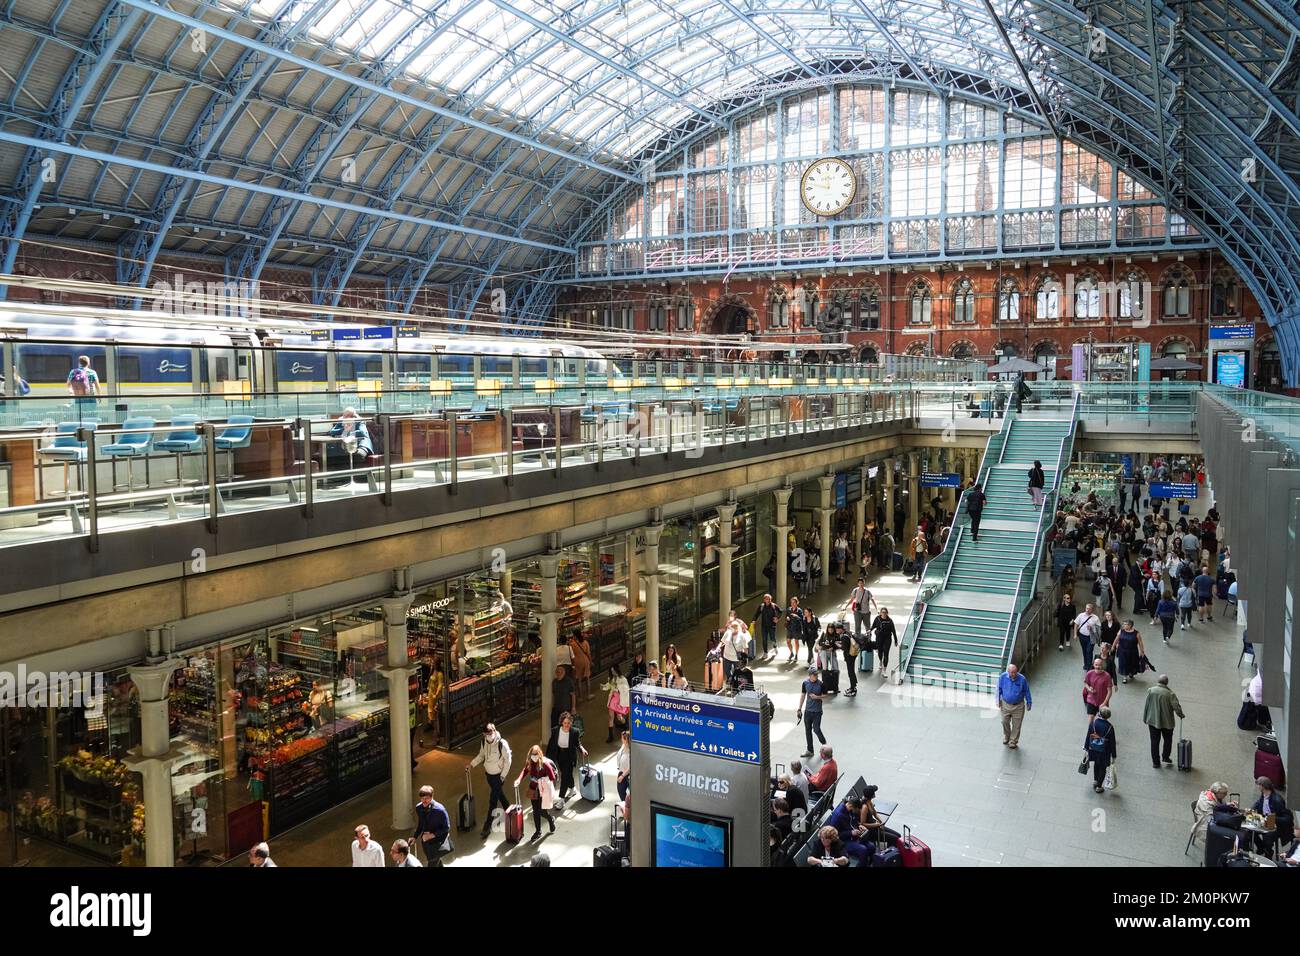 Passagers à la gare internationale de St Pancras, Londres Angleterre Royaume-Uni Banque D'Images